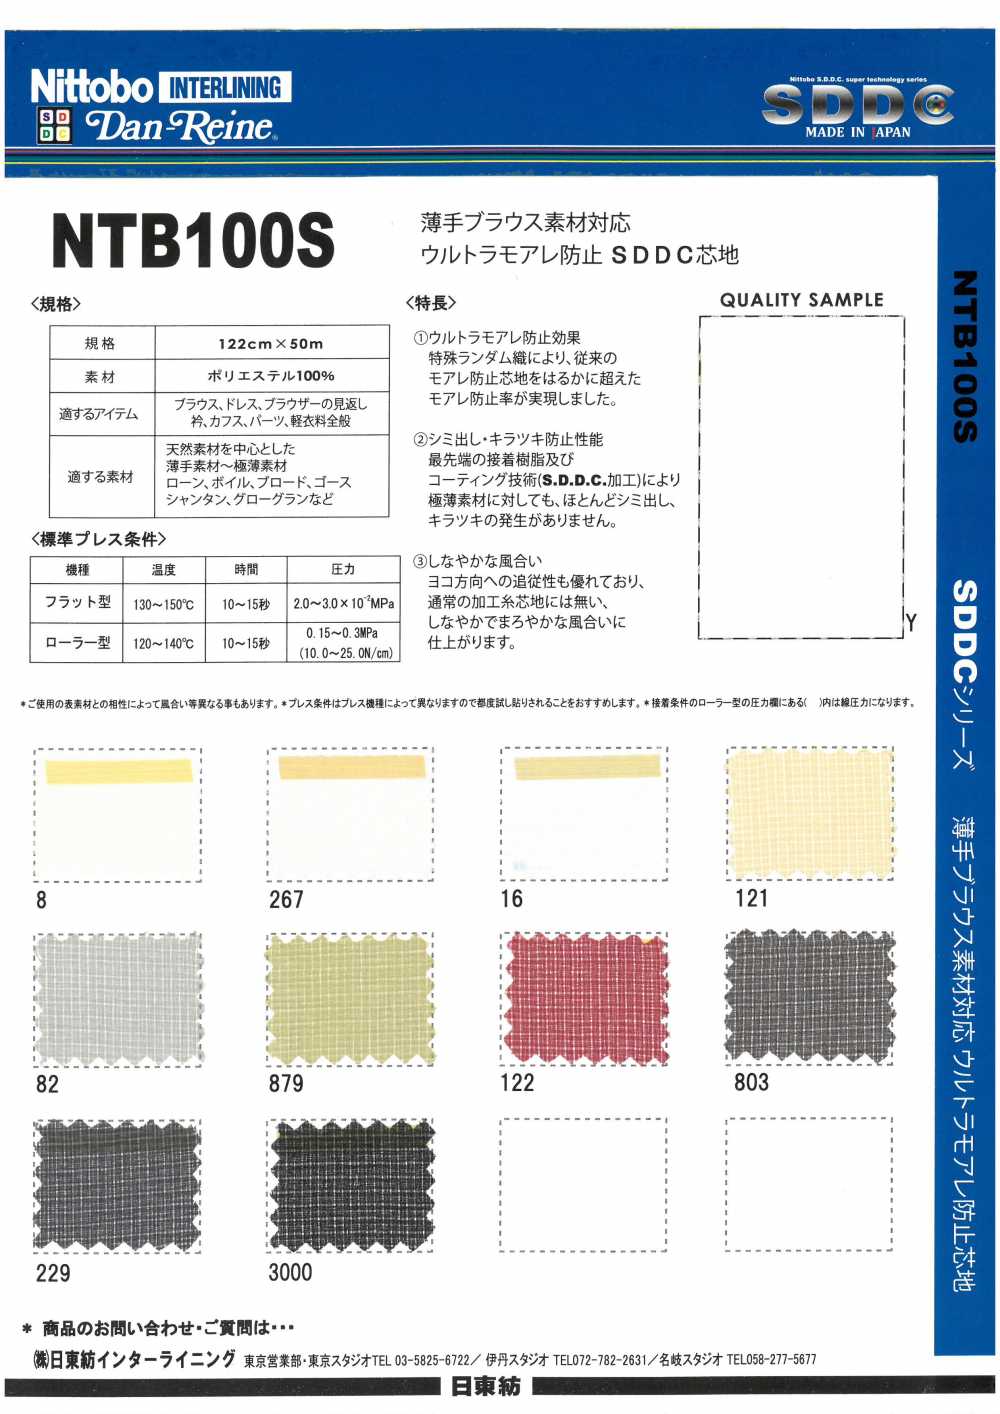 NTB100S Material De La Blusa Fina Compatible Con La Prevención Ultra Moire SDDC Interline 15D[Entretela] Nittobo